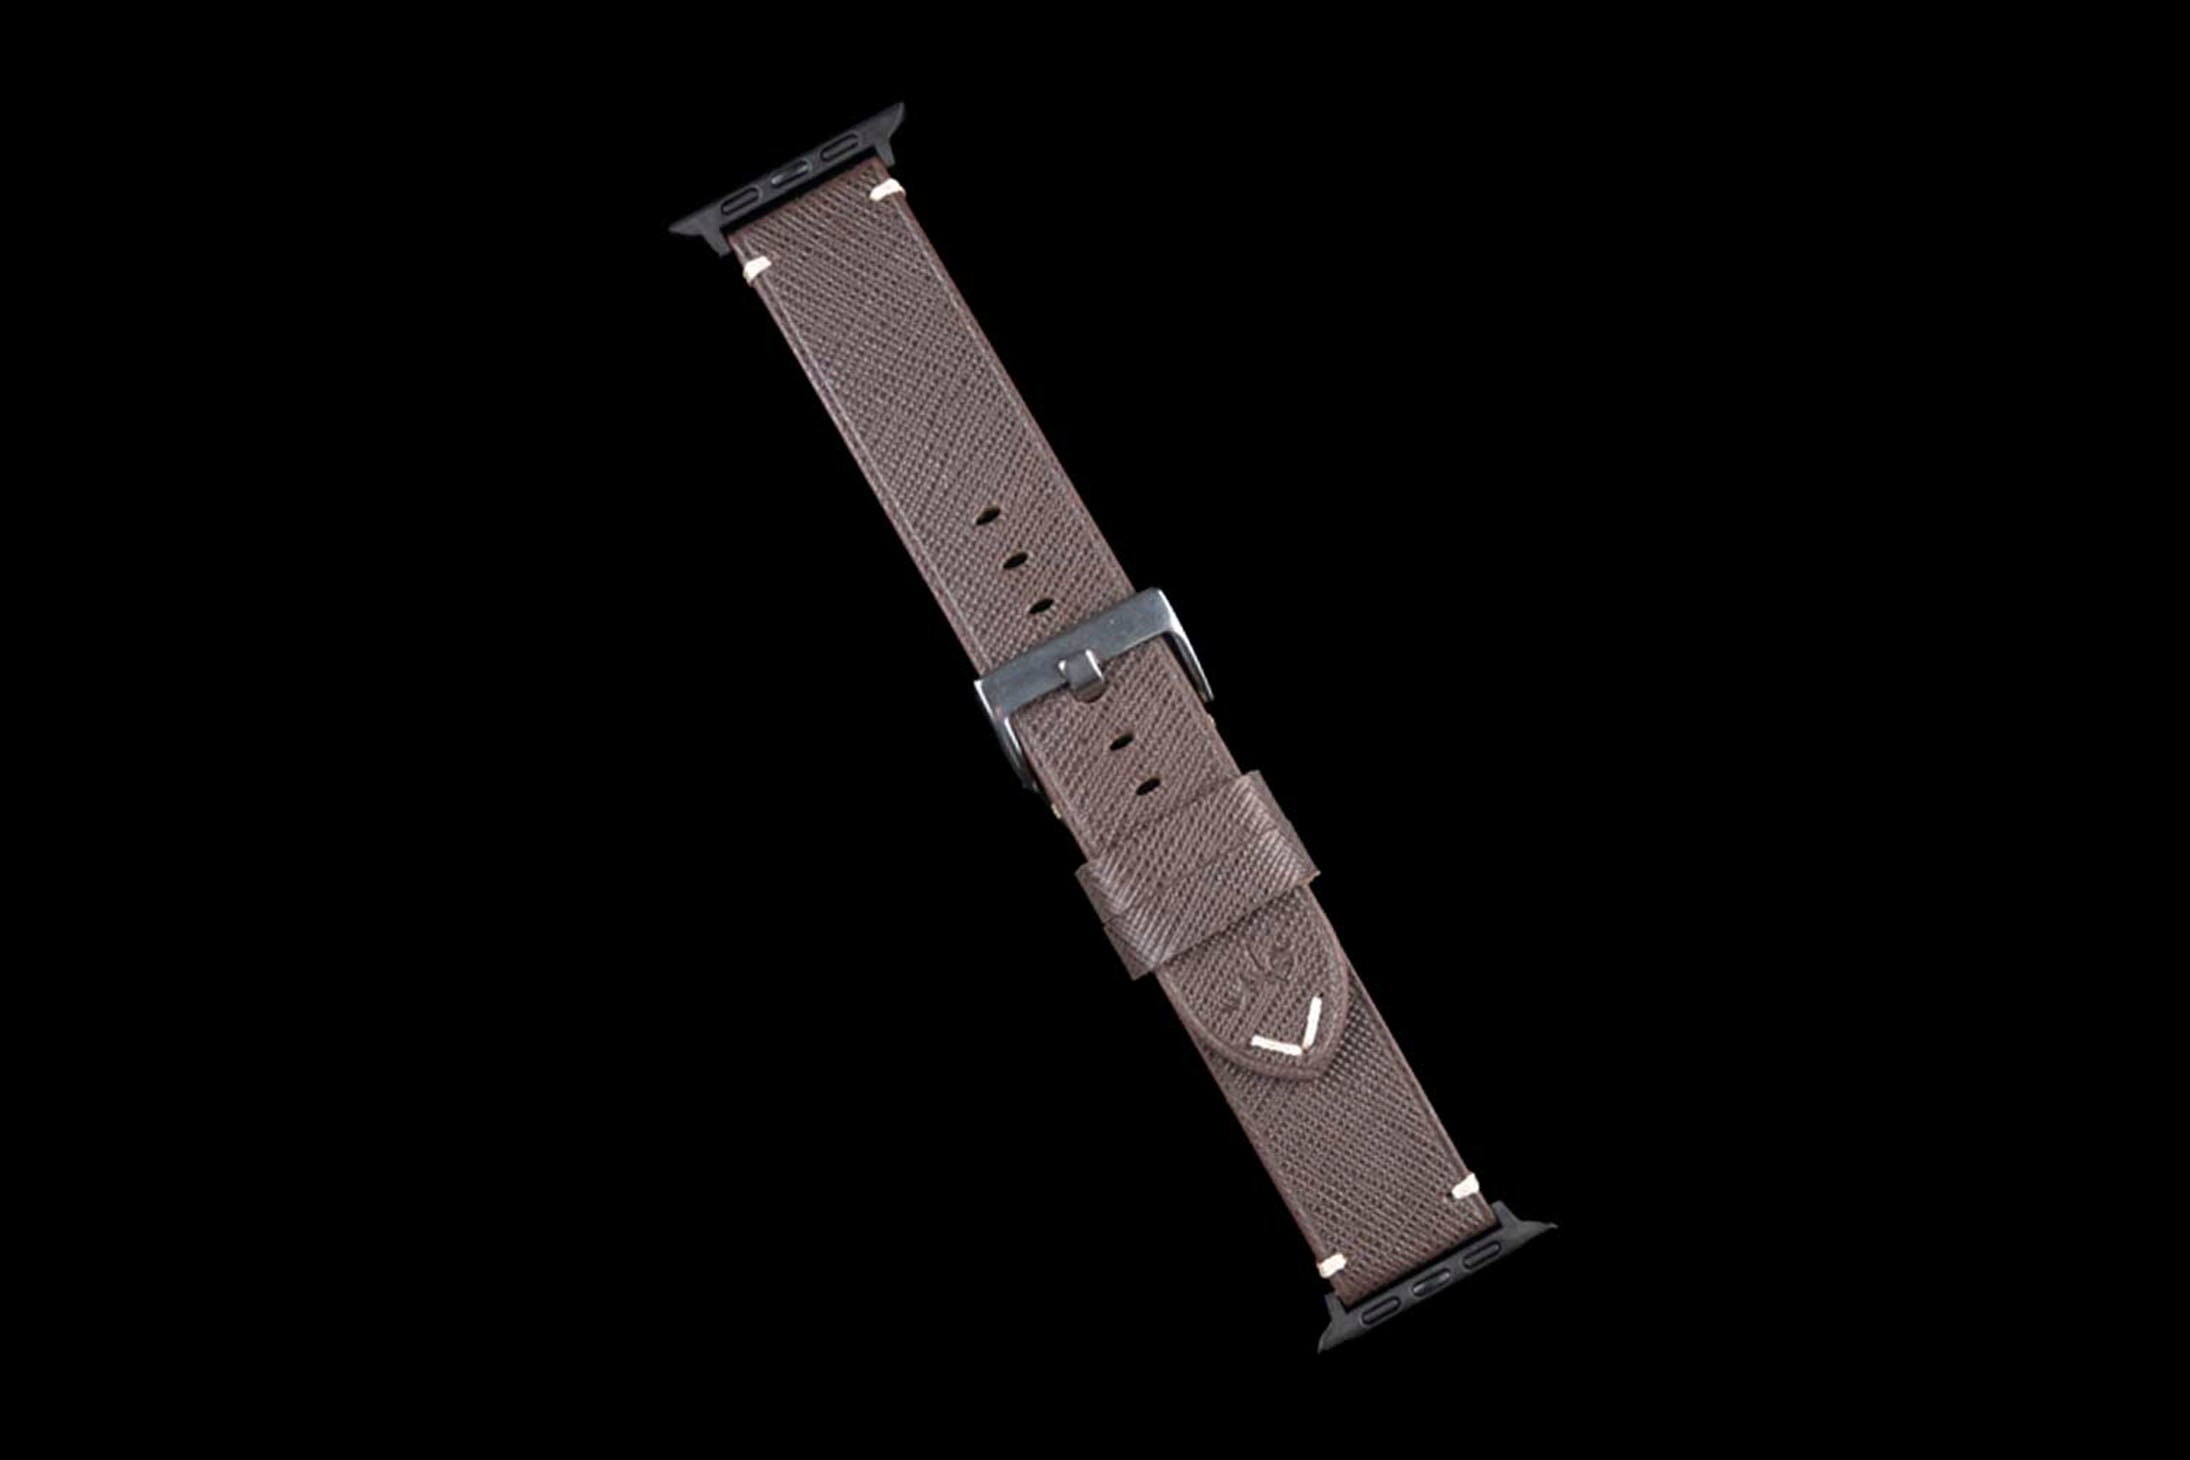 Louis Vuitton Watch Band Samsung -  New Zealand